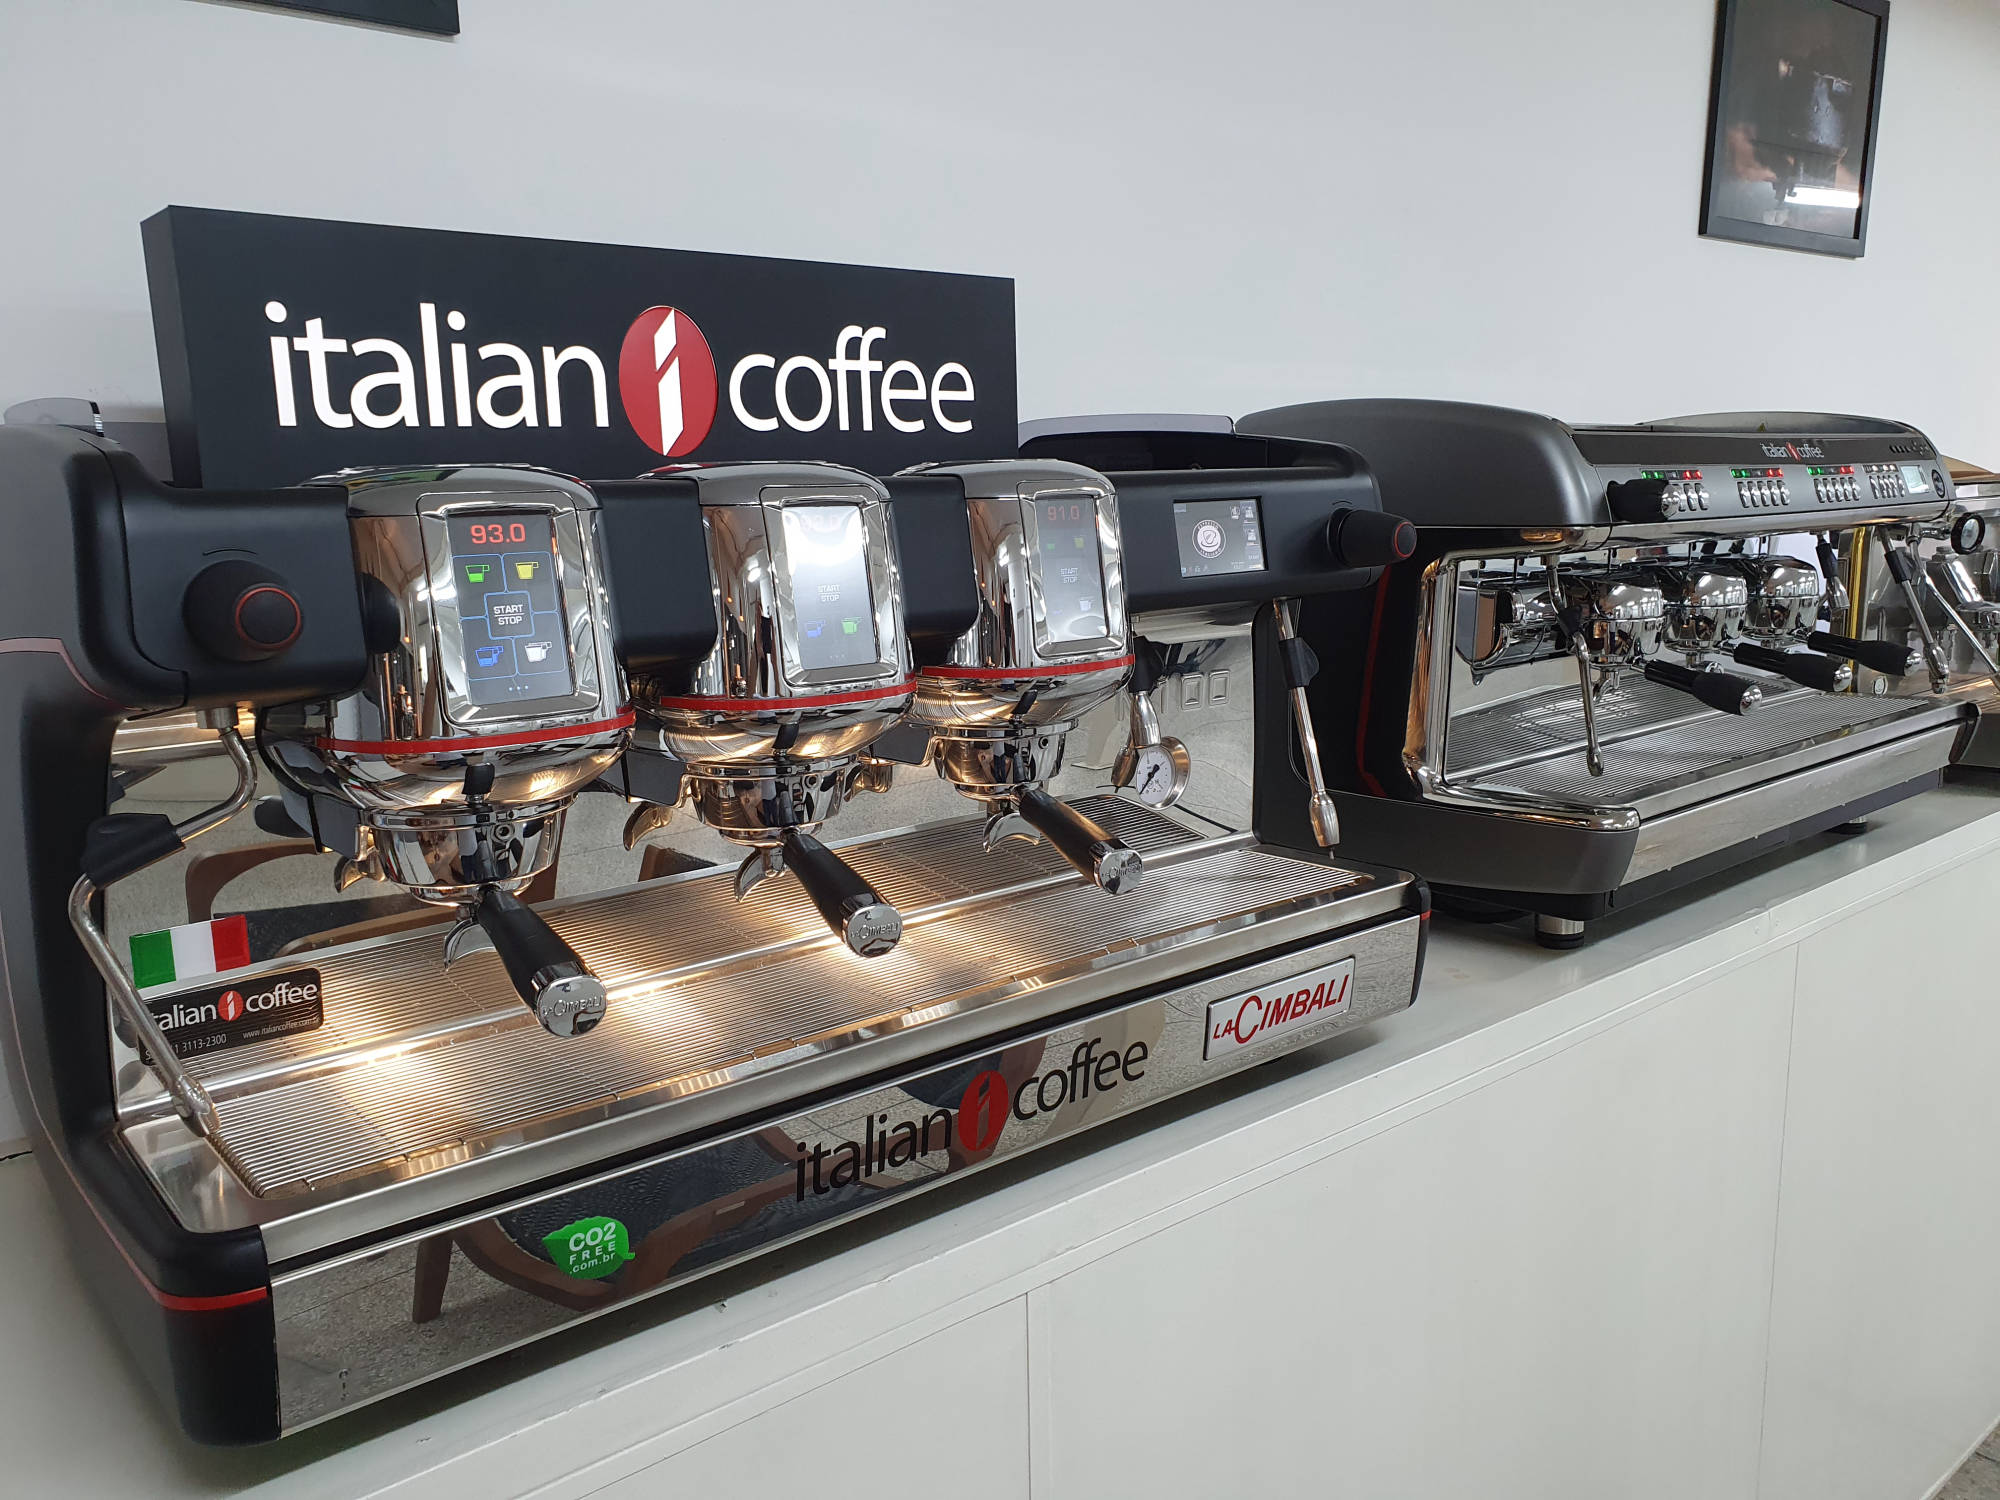 Máquina de café expresso profissional Italiana